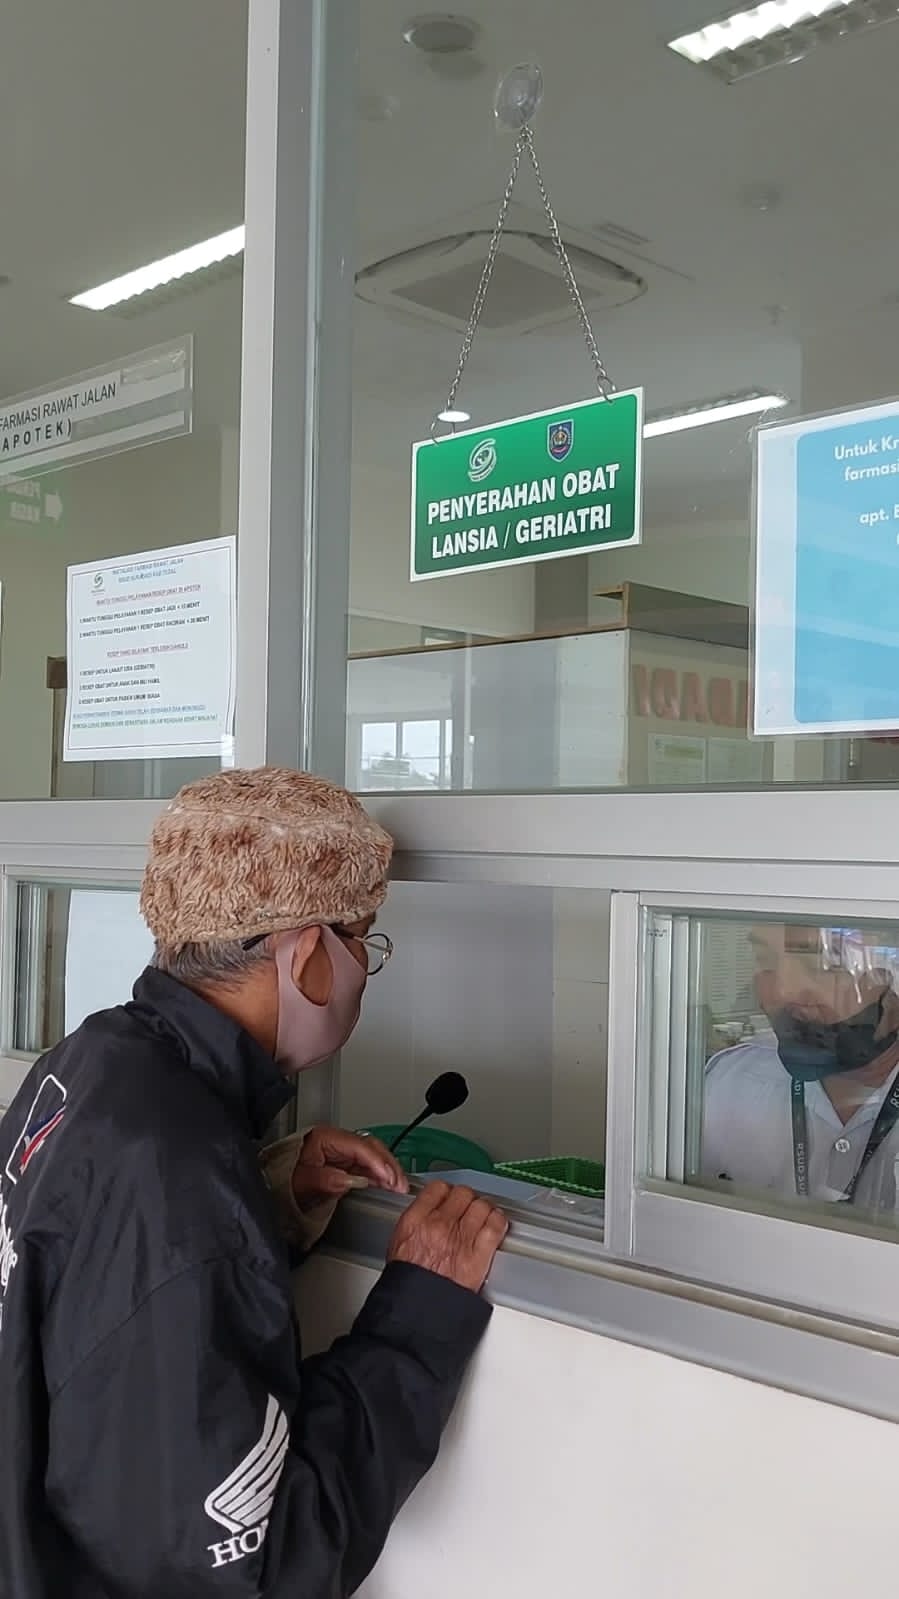 Berada di Jalan Pantura Kabupaten Tegal, Rumah Sakit Ini Prioritaskan Lansia